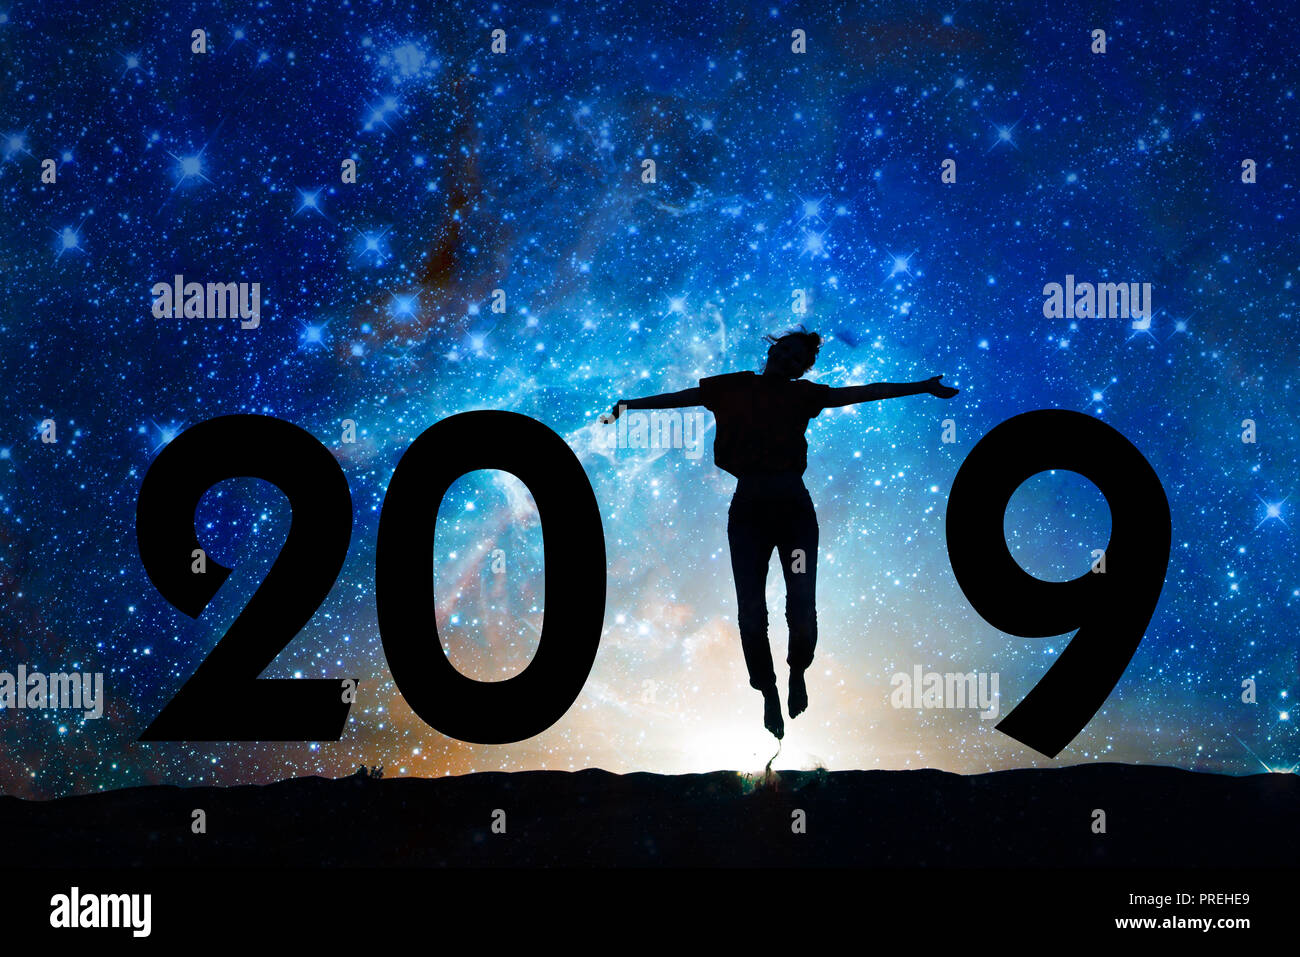 Nouvel an 2019 carte de vœux. Silhouette d'une femme qui saute dans la nuit étoilée, le fond de ciel Banque D'Images